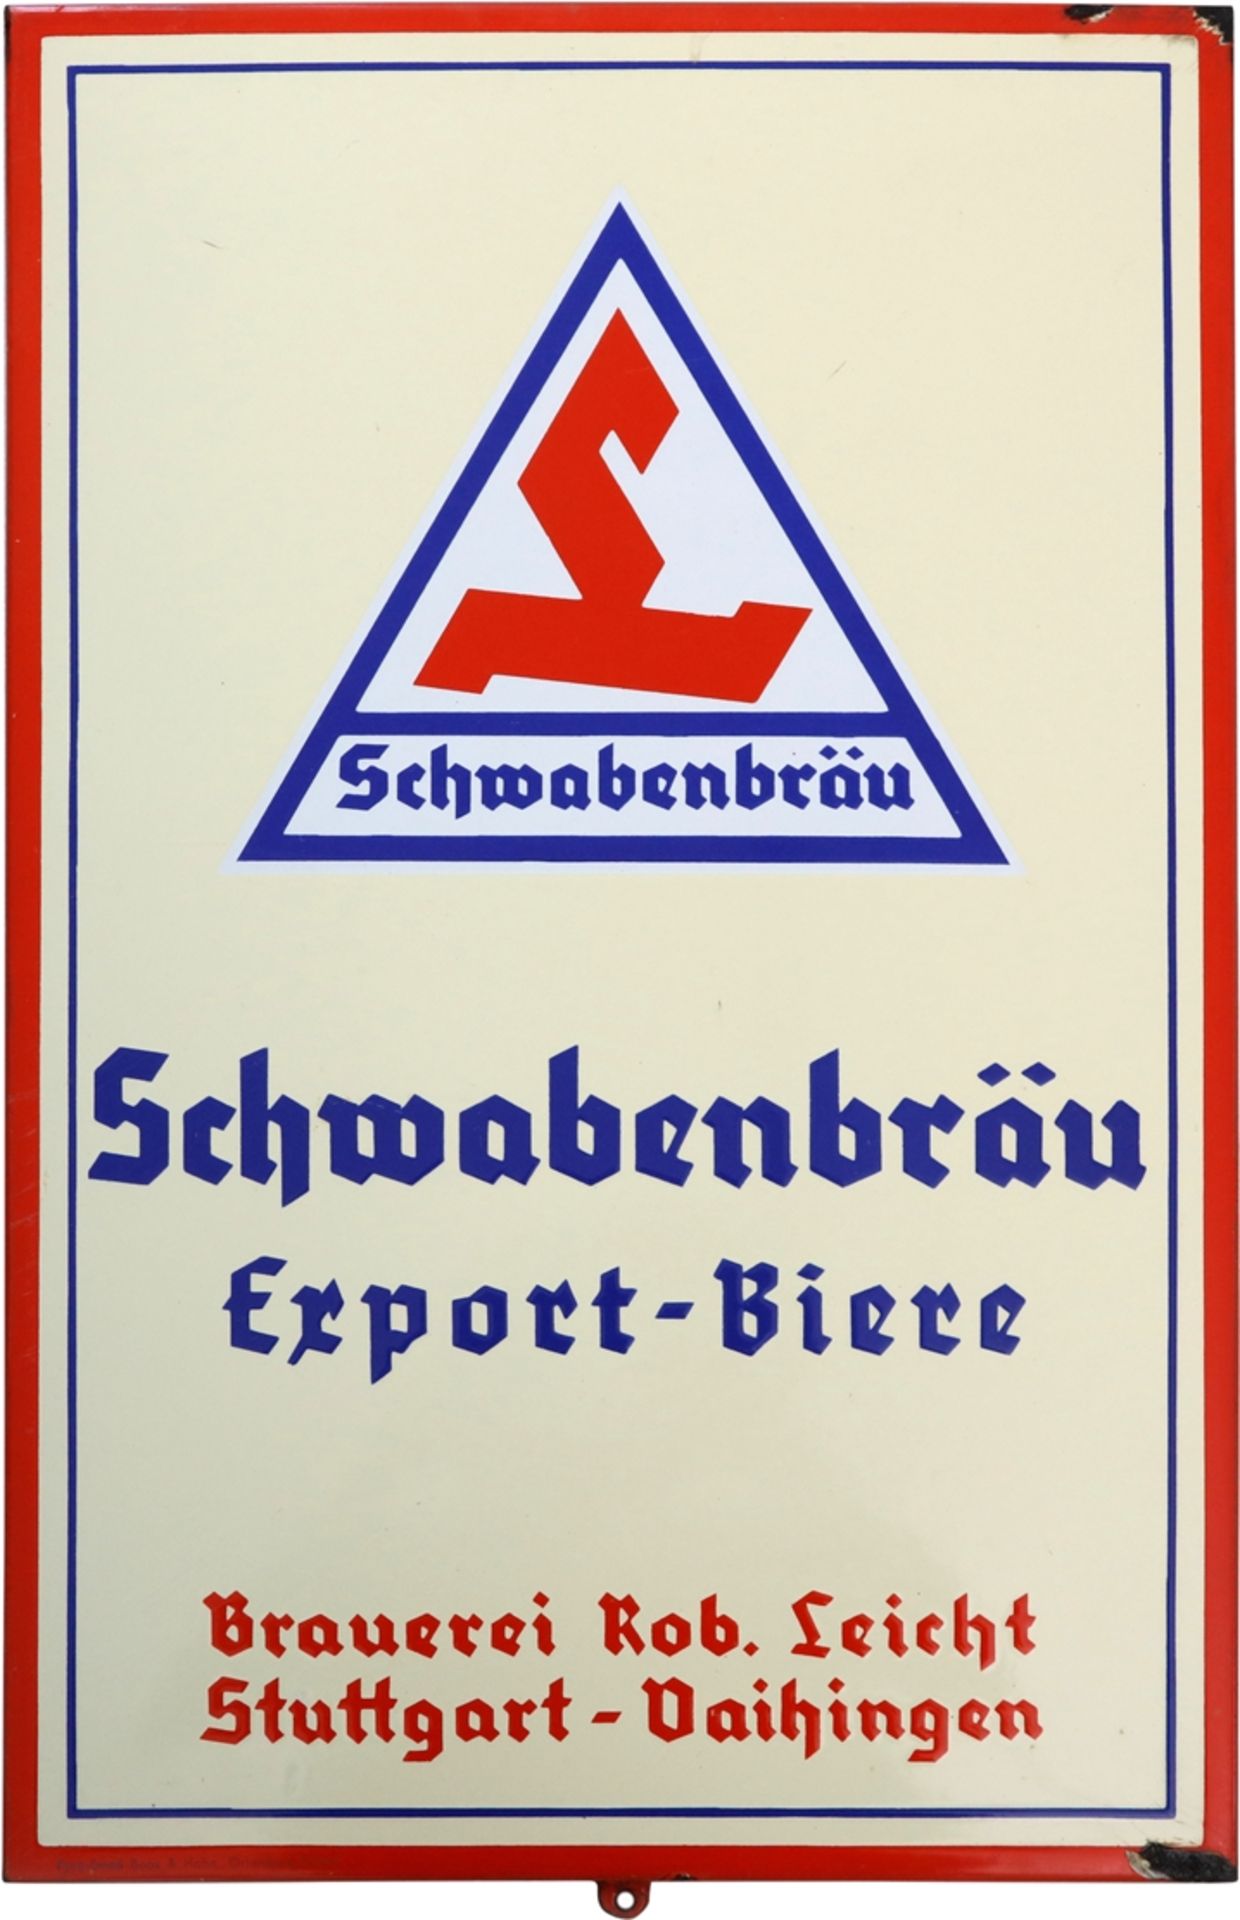 Emailschild Schwabenbräu, Brauerei Rob. Leicht, Stuttgart-Vaihingen, um 1950